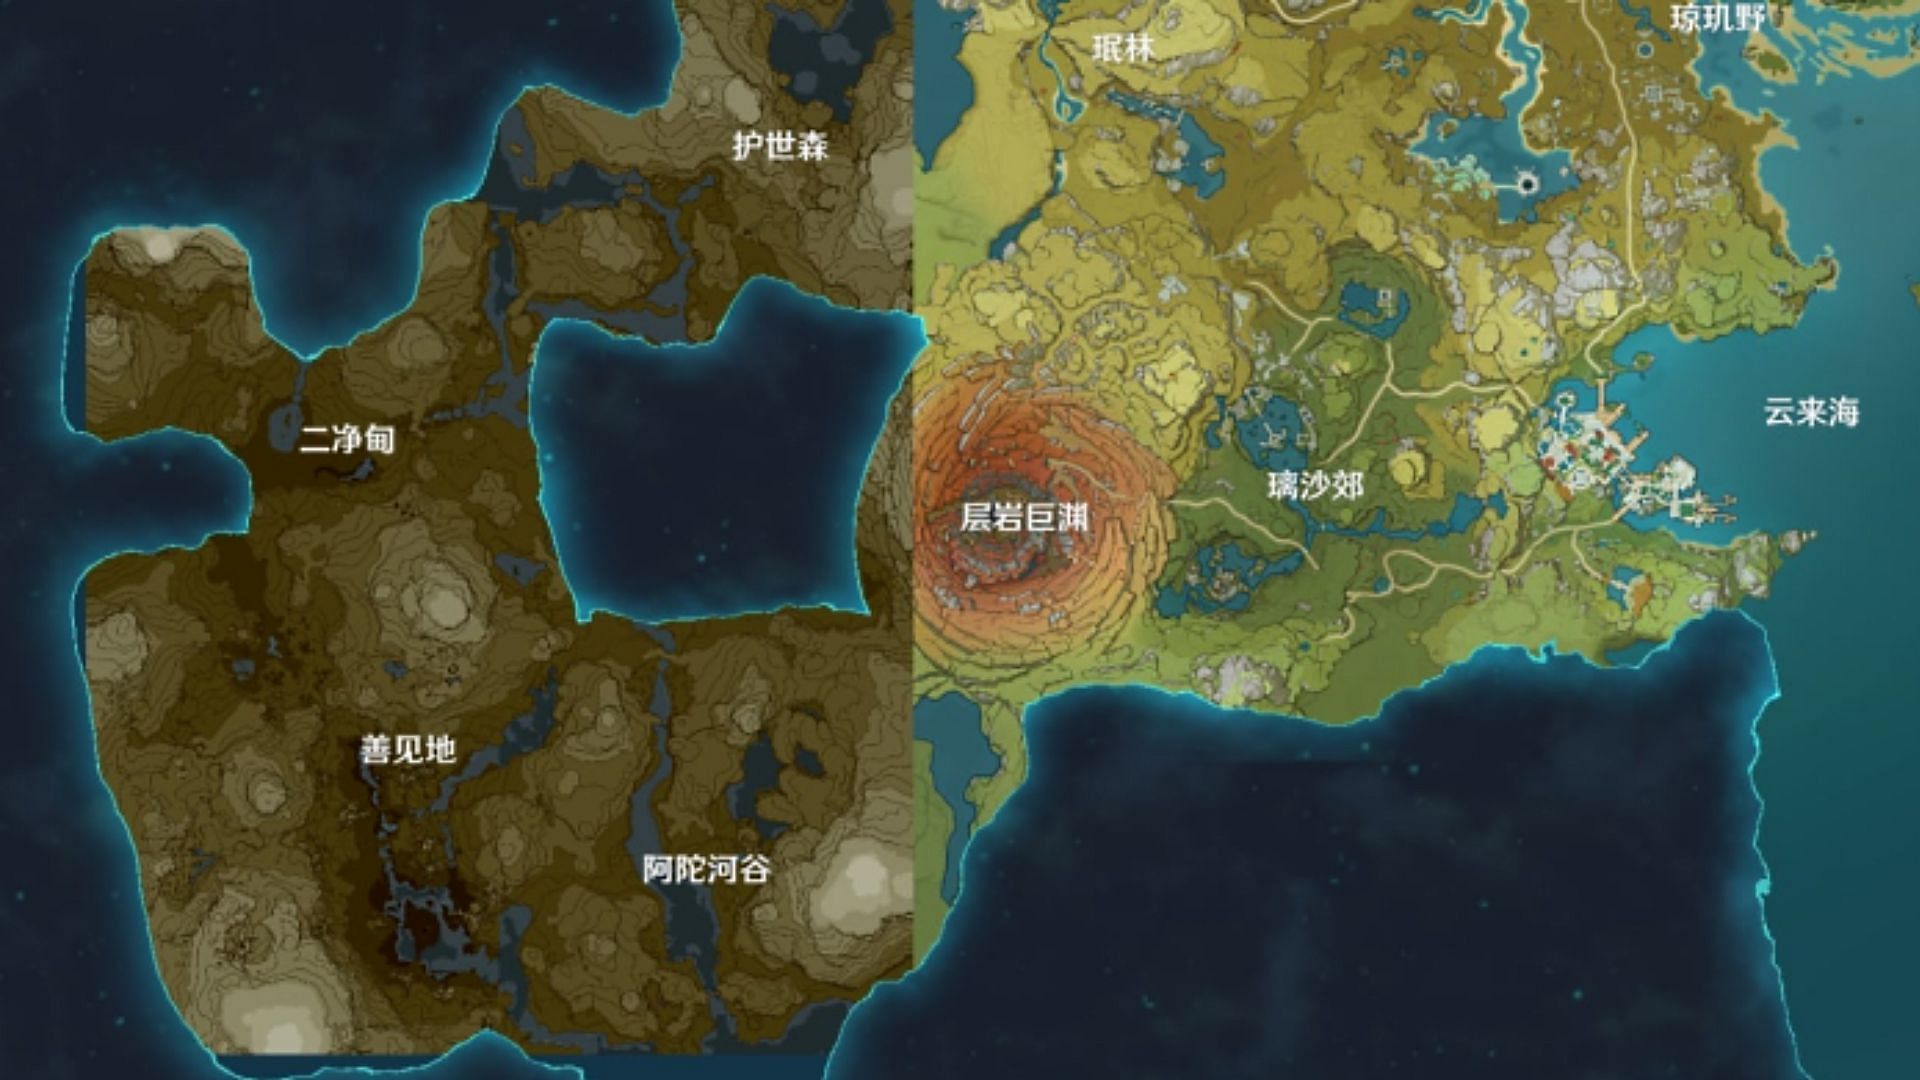 Với bản đồ Sumeru mới của Genshin Impact, người chơi sẽ được tận hưởng nhiều thử thách mới và phần thưởng hấp dẫn. Từ những địa điểm ẩn giấu đến những quái vật thần thoại, đội ngũ phát triển đã chuẩn bị mọi thứ để tạo ra một thế giới đáng khám phá.